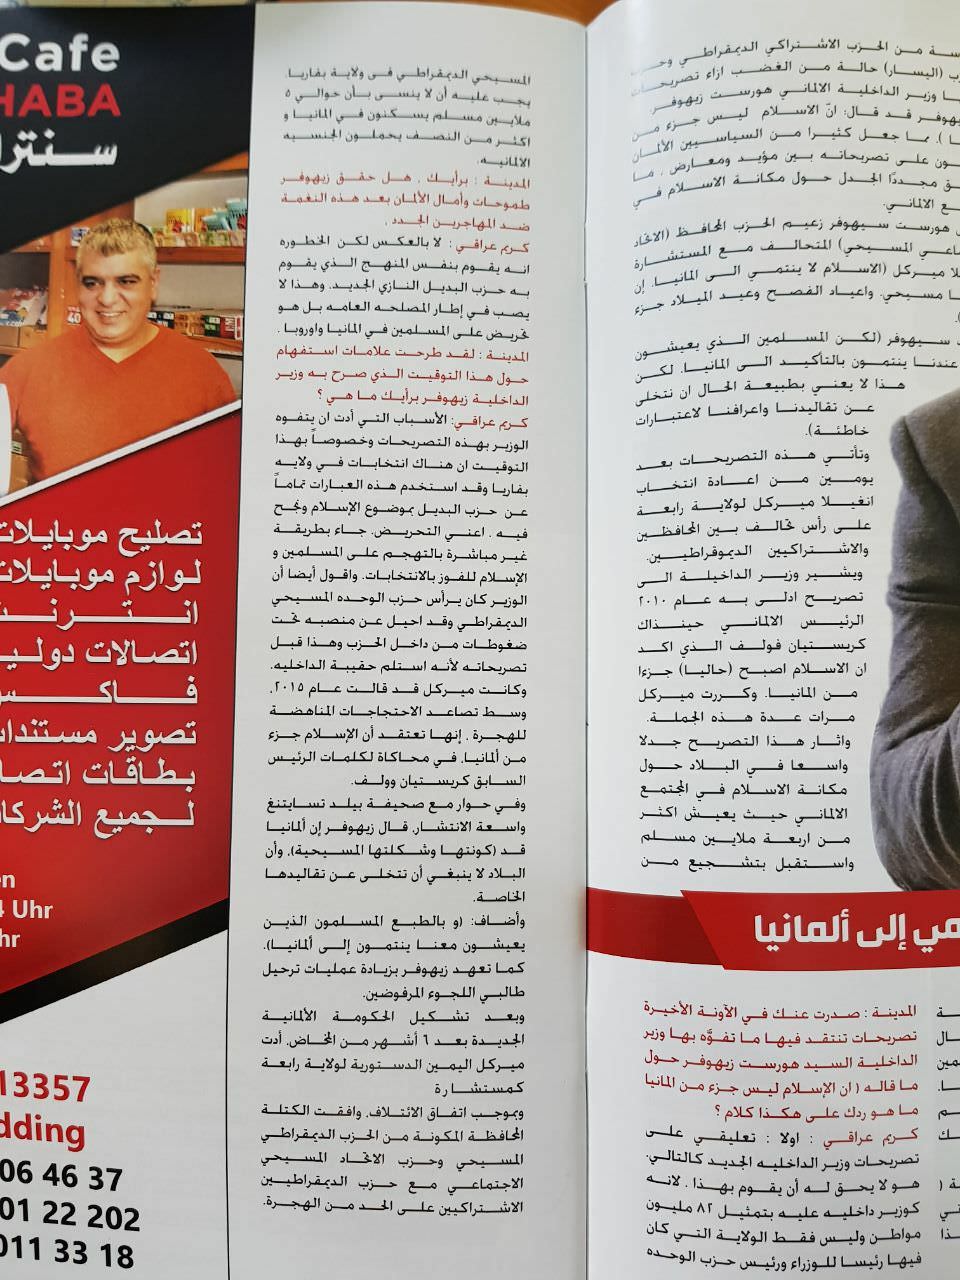 النائب عبد الكريم عراقي  على غلاف مجلة المدينة في برلين ويرد على وزير الداخلية الألماني زيهوفر